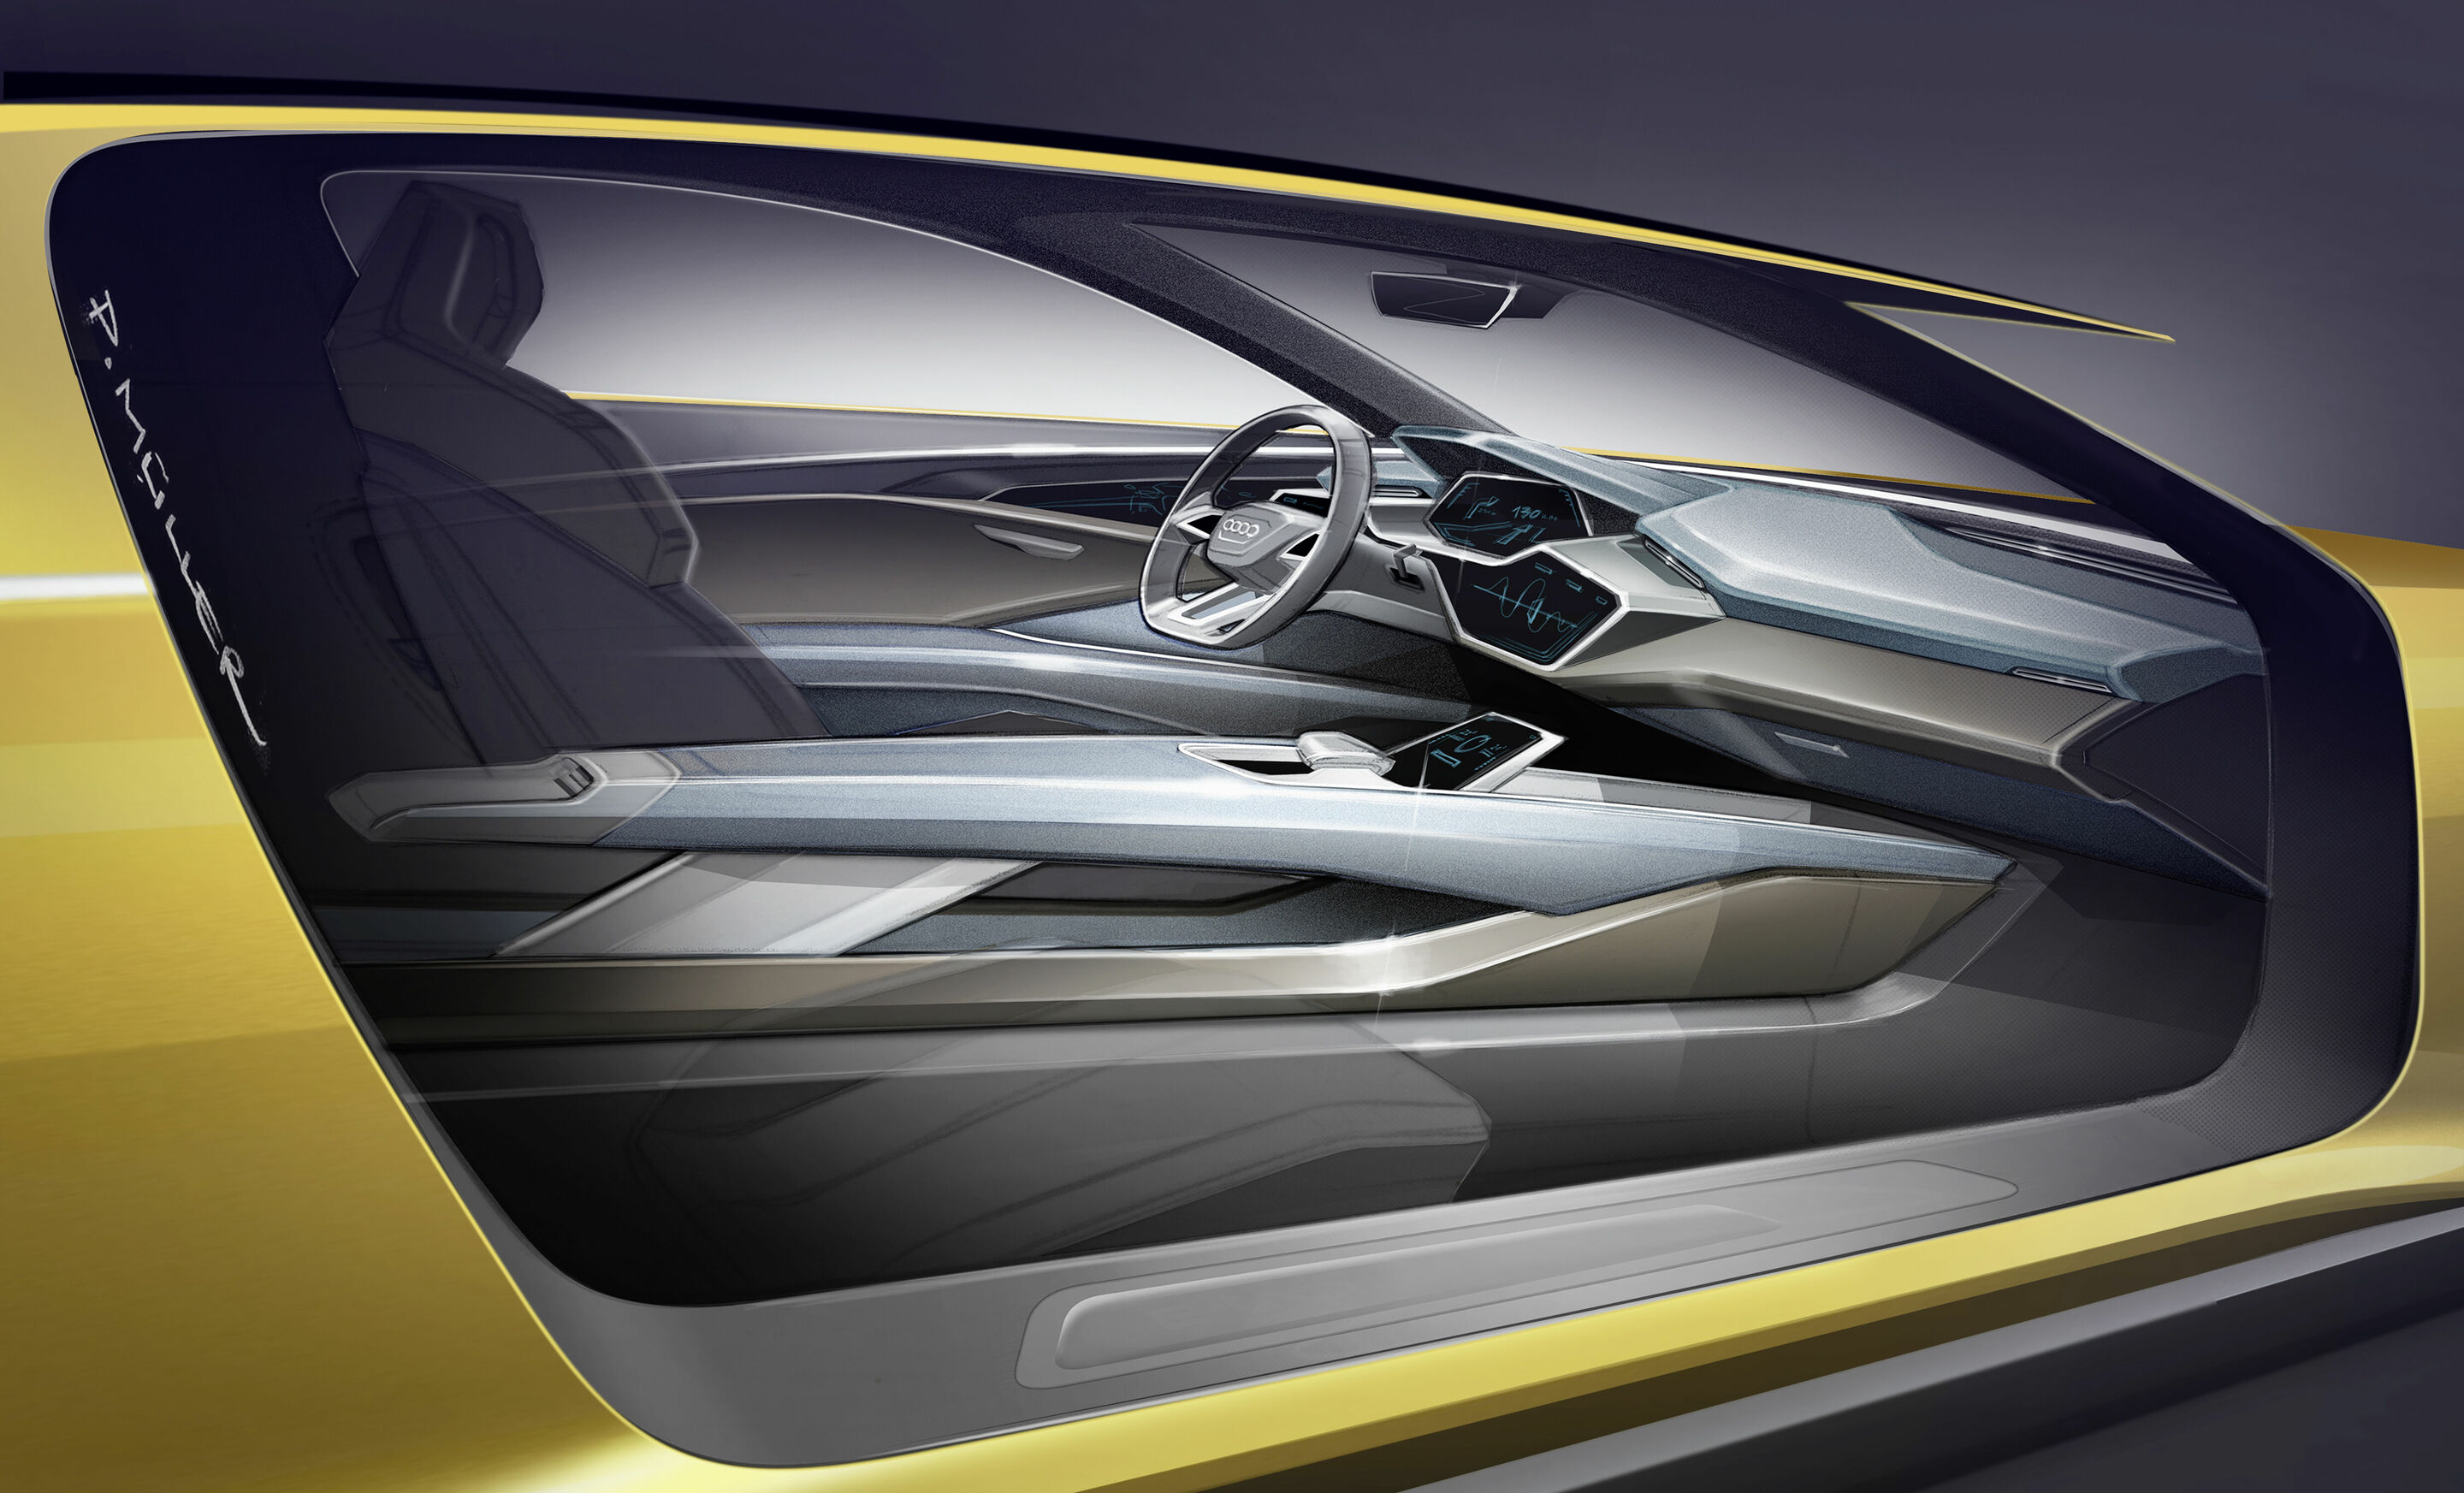 Audi h-tron quattro concept